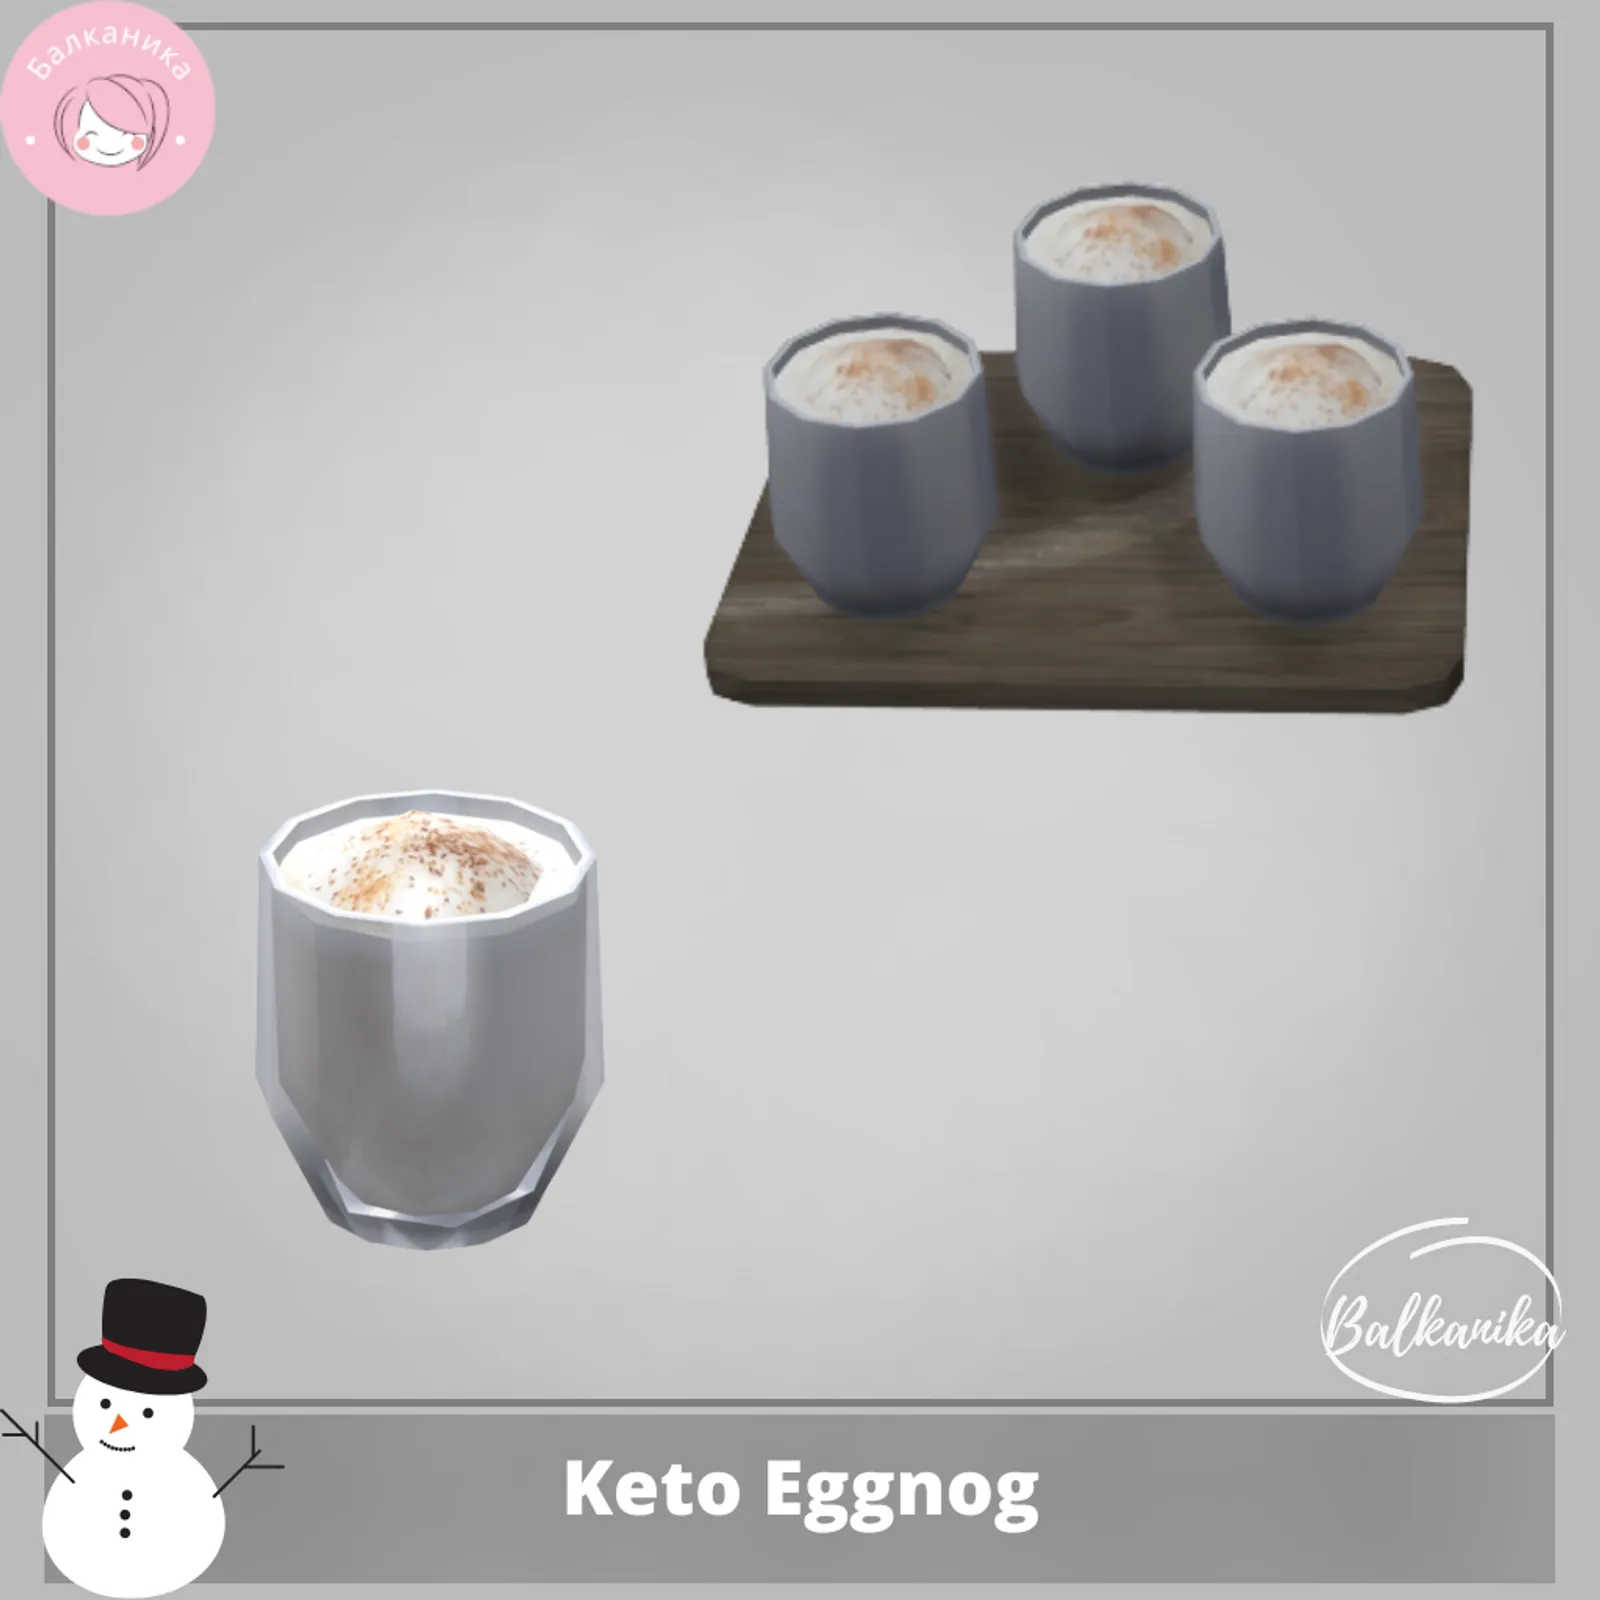 Keto Eggnog